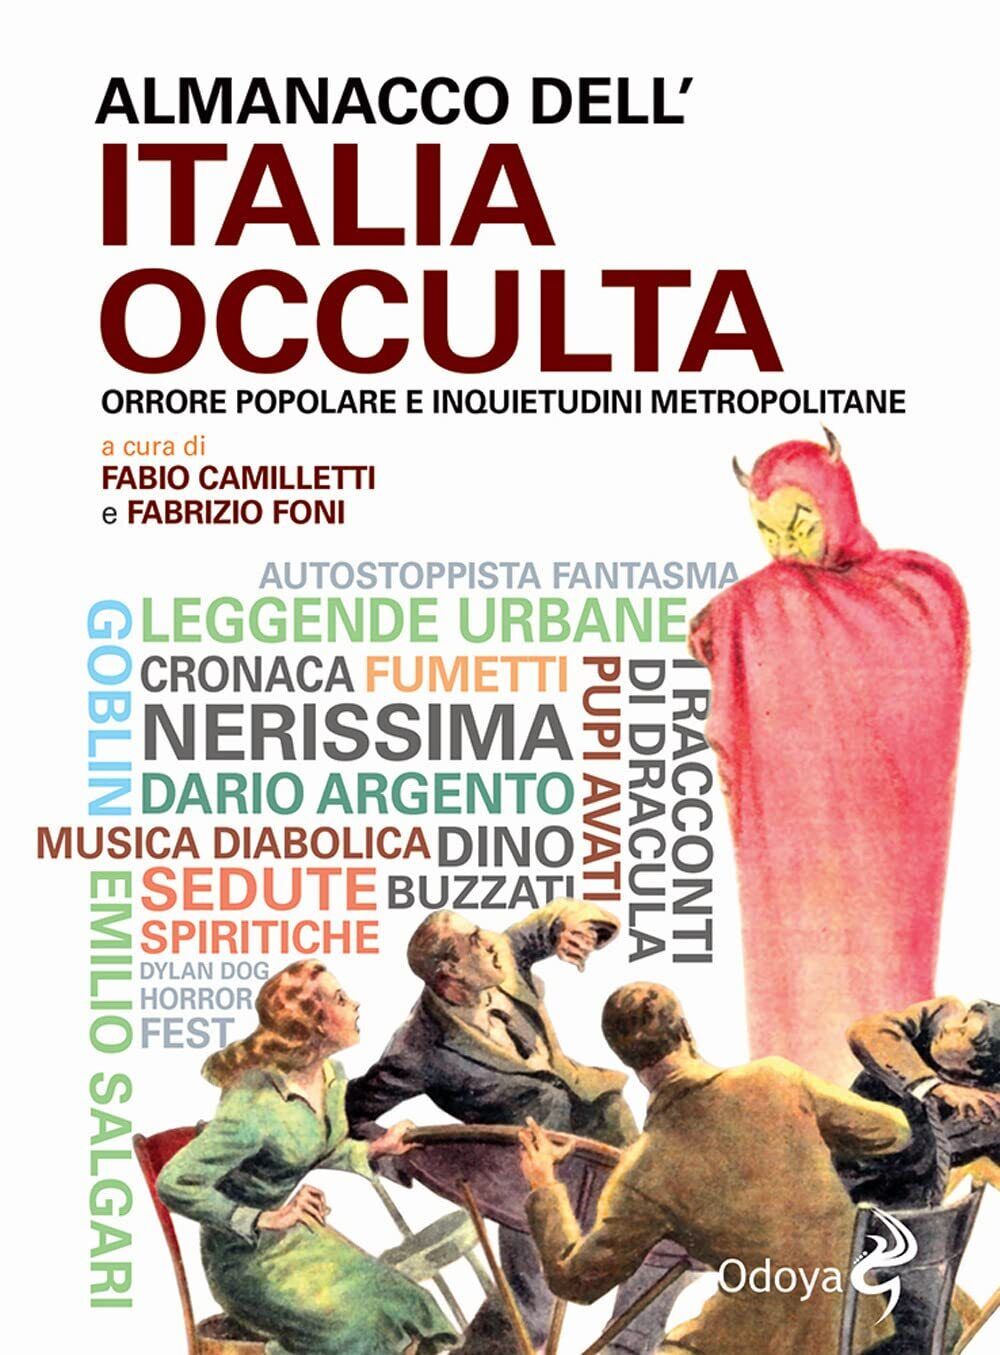 Almanacco dell'Italia occulta - F. Foni, F. Camilletti - Odoya, 2022